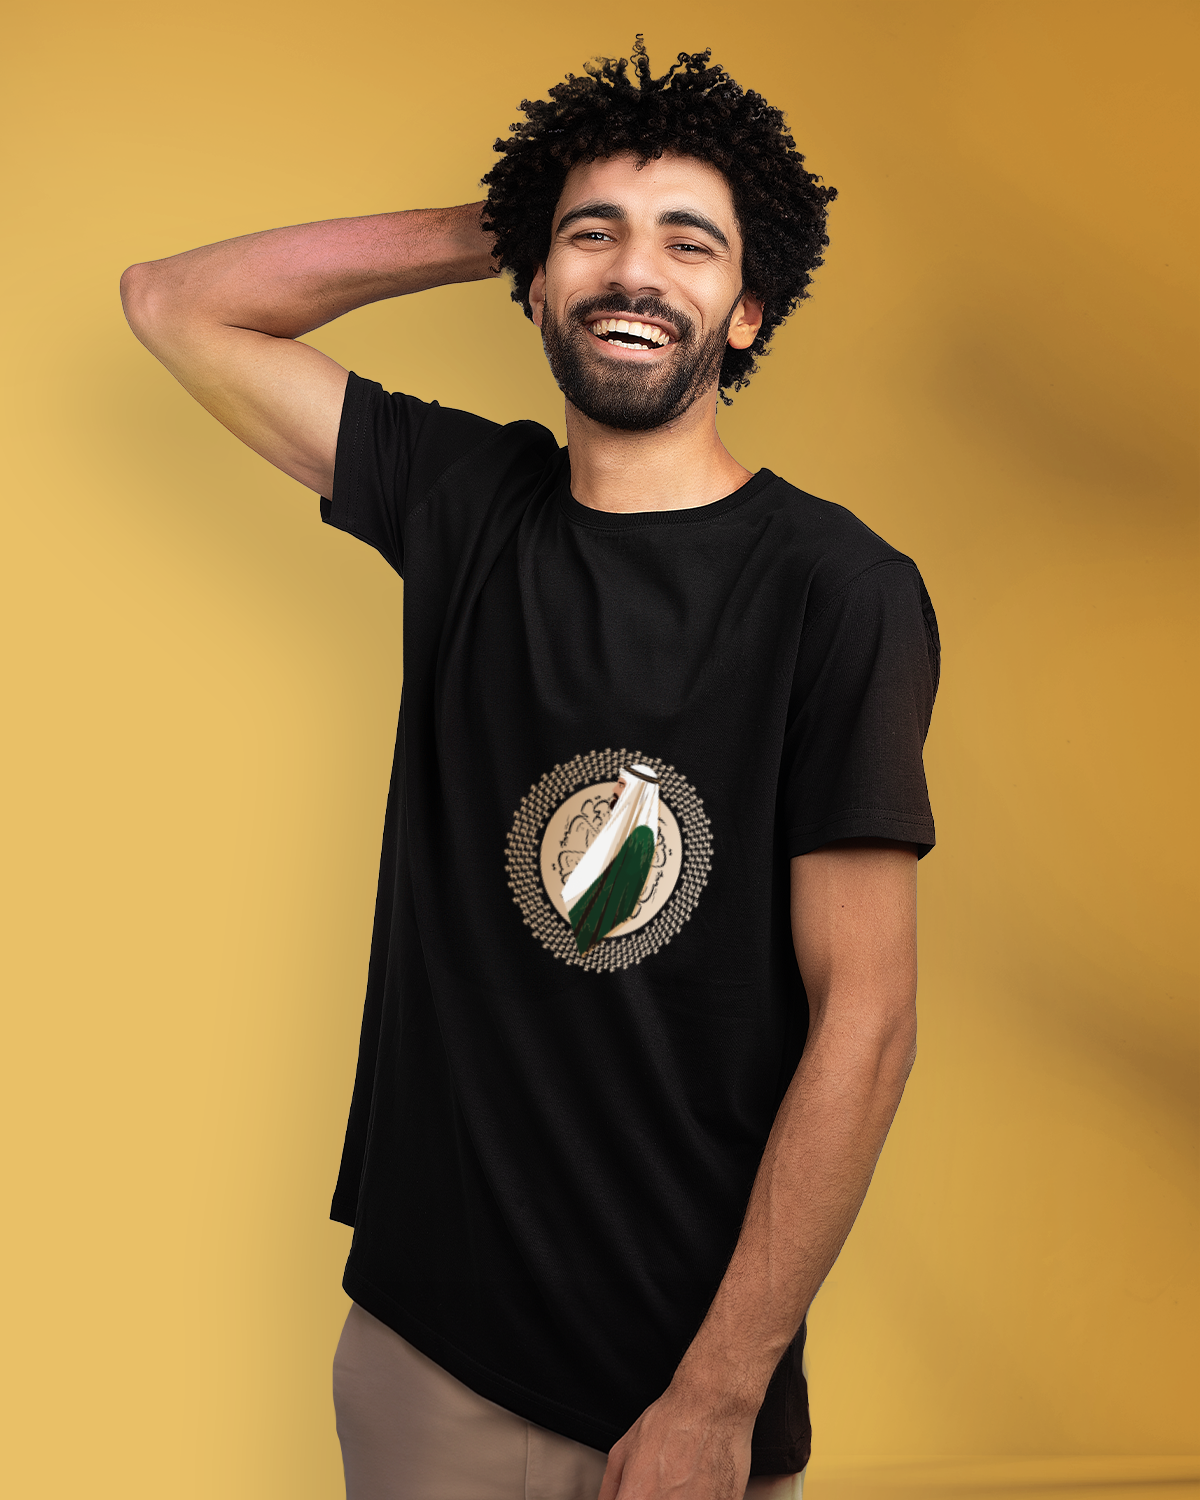 Men's Foundation Day T-shirt (Sarei Lilmajd Walealya')